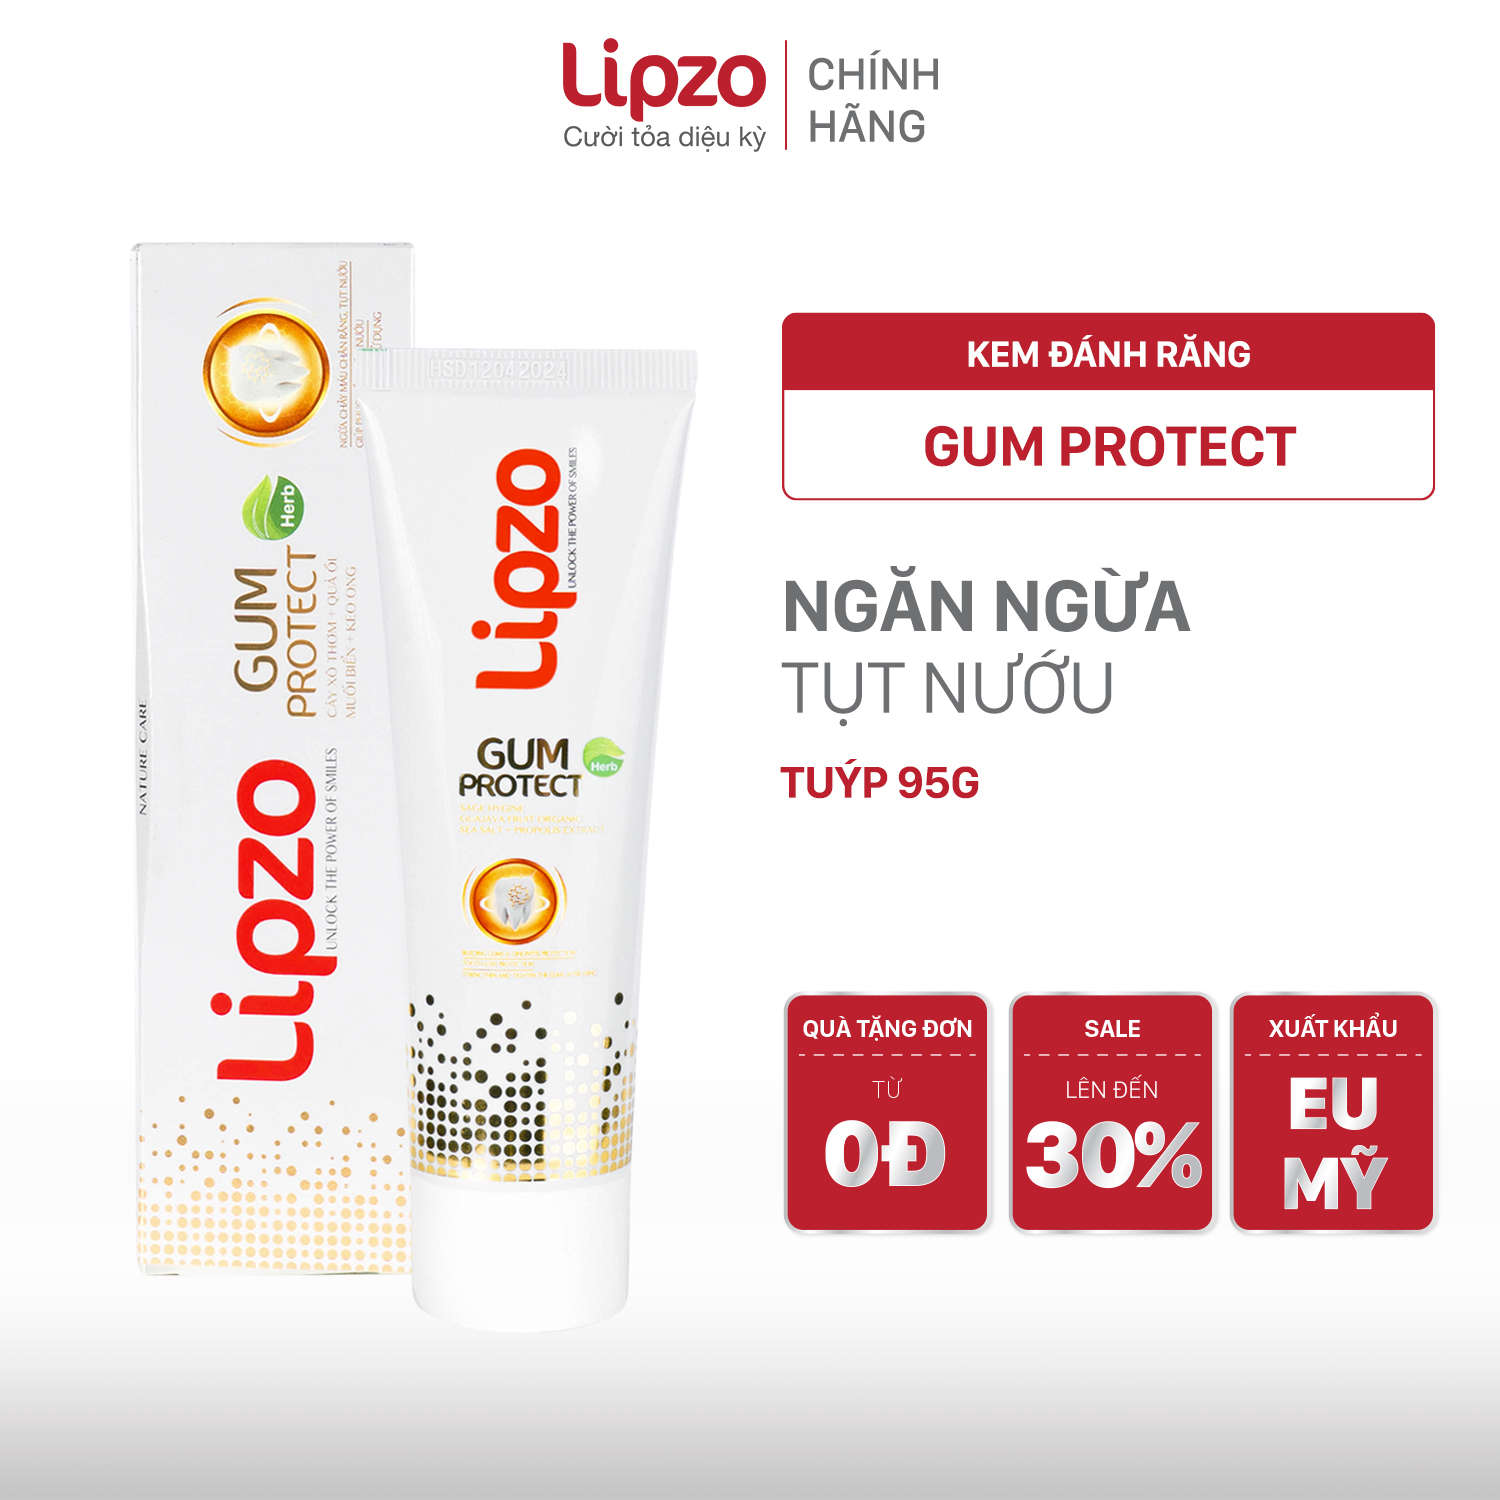 Kem Đánh Răng Dược Liệu Lipzo Gum Protect Chống Tụt Nướu 95g Ngăn Ngừa